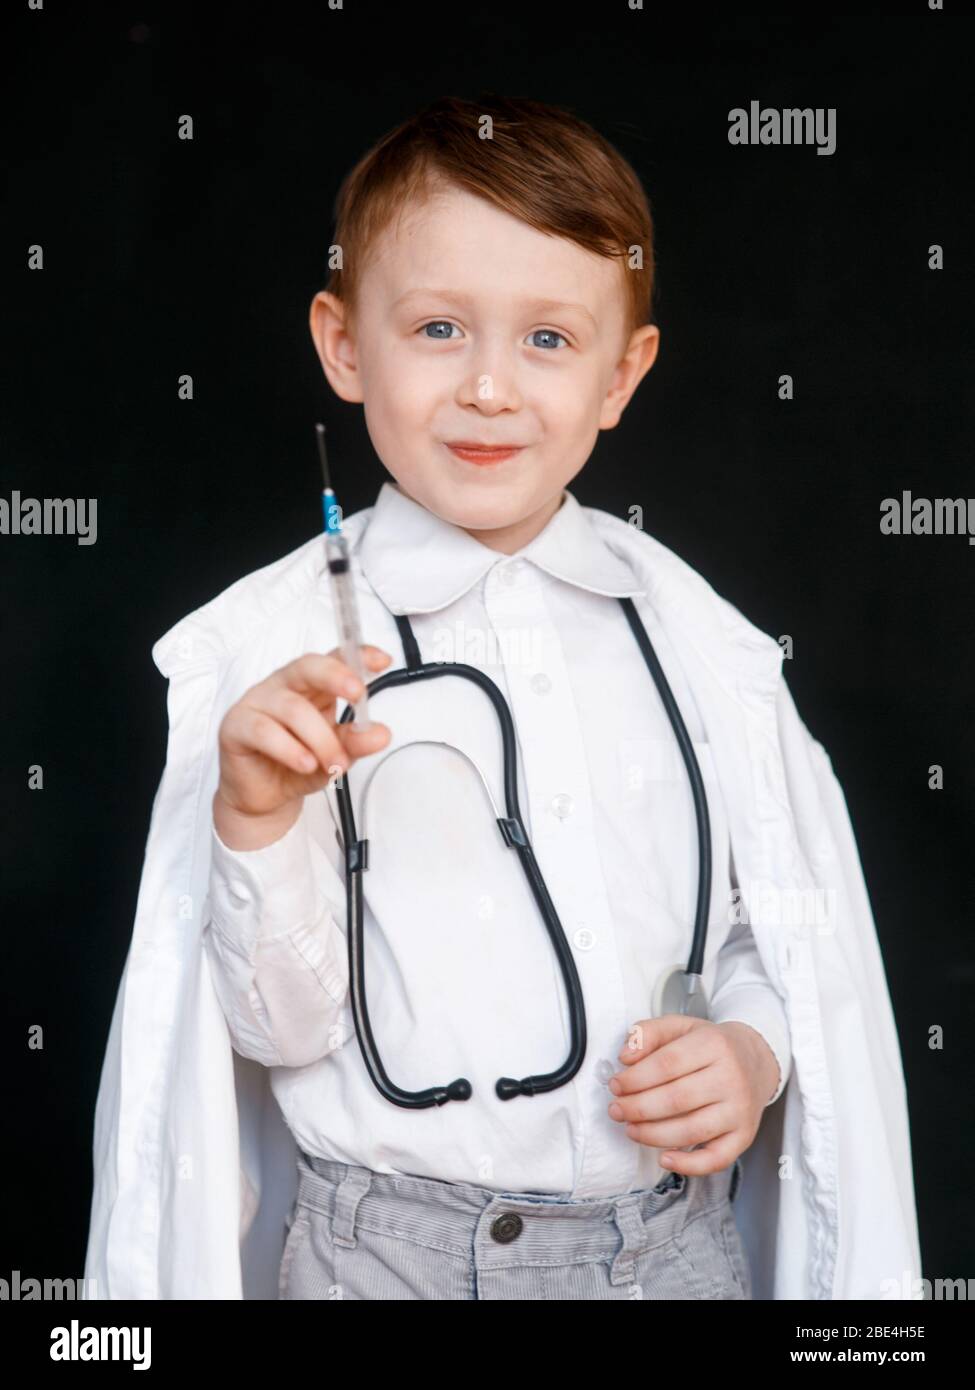 Un niño en el papel de médico. El niño elige la profesión de médico. Jeringa en sus manos sobre fondo negro Foto de stock